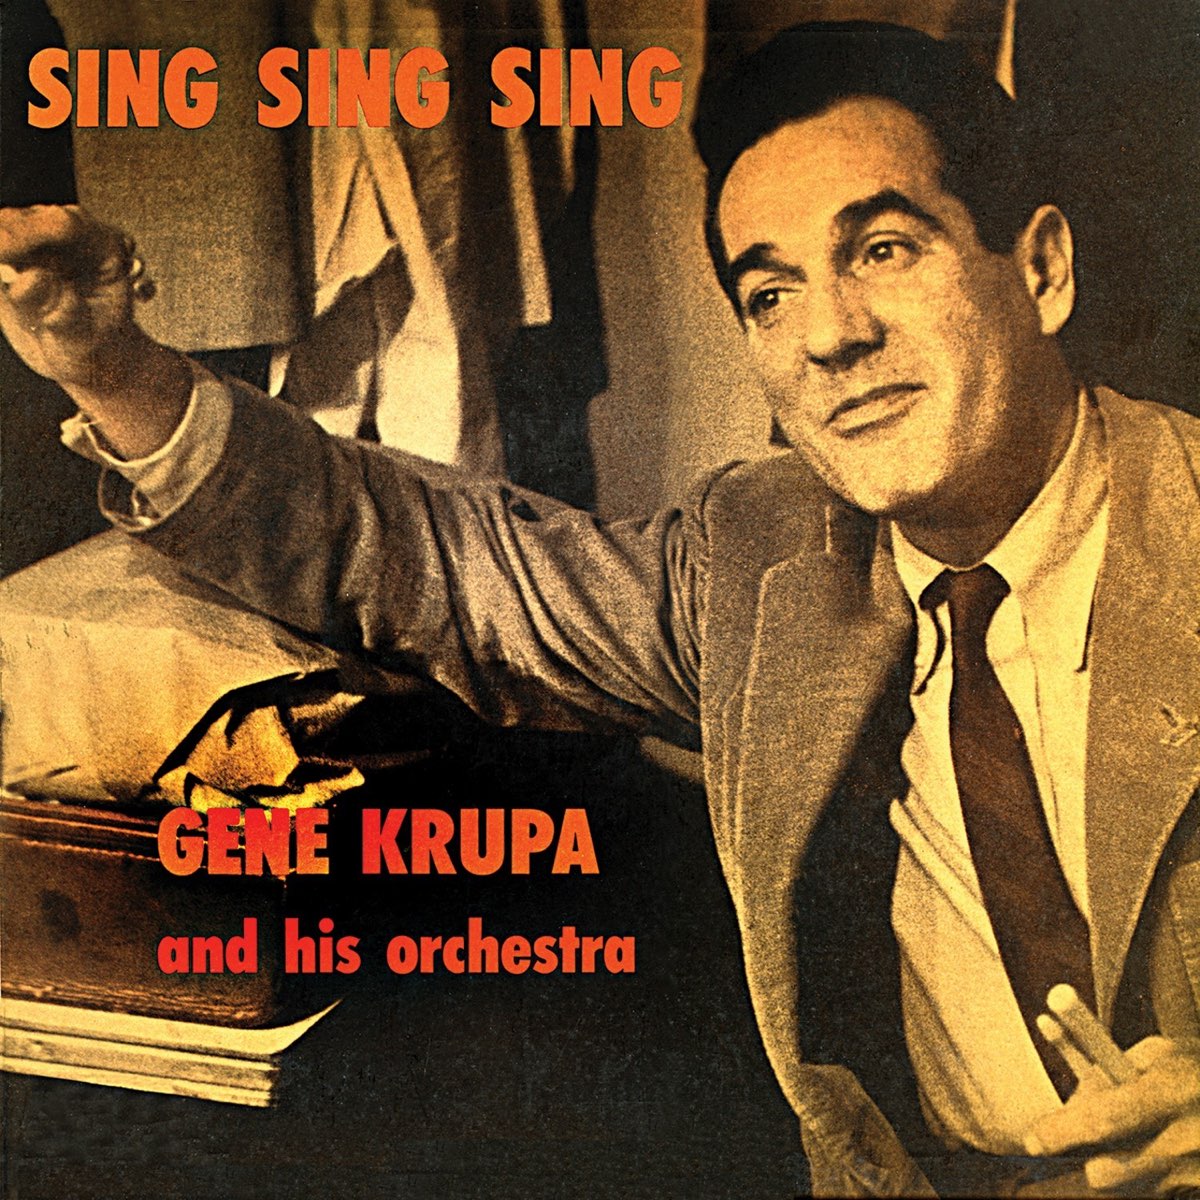 Sing sing band. Gene Krupa Sing Sing Sing Drums Notes. Benny Goodman and his Orchestra - Sing, Sing, Sing..Грампластинка Sing, Sing, Sing (with a Swing) ..1936.. Gene Krupa and his Orchestra ajnj. Sing Sing Sing Benny Goodman картинка.